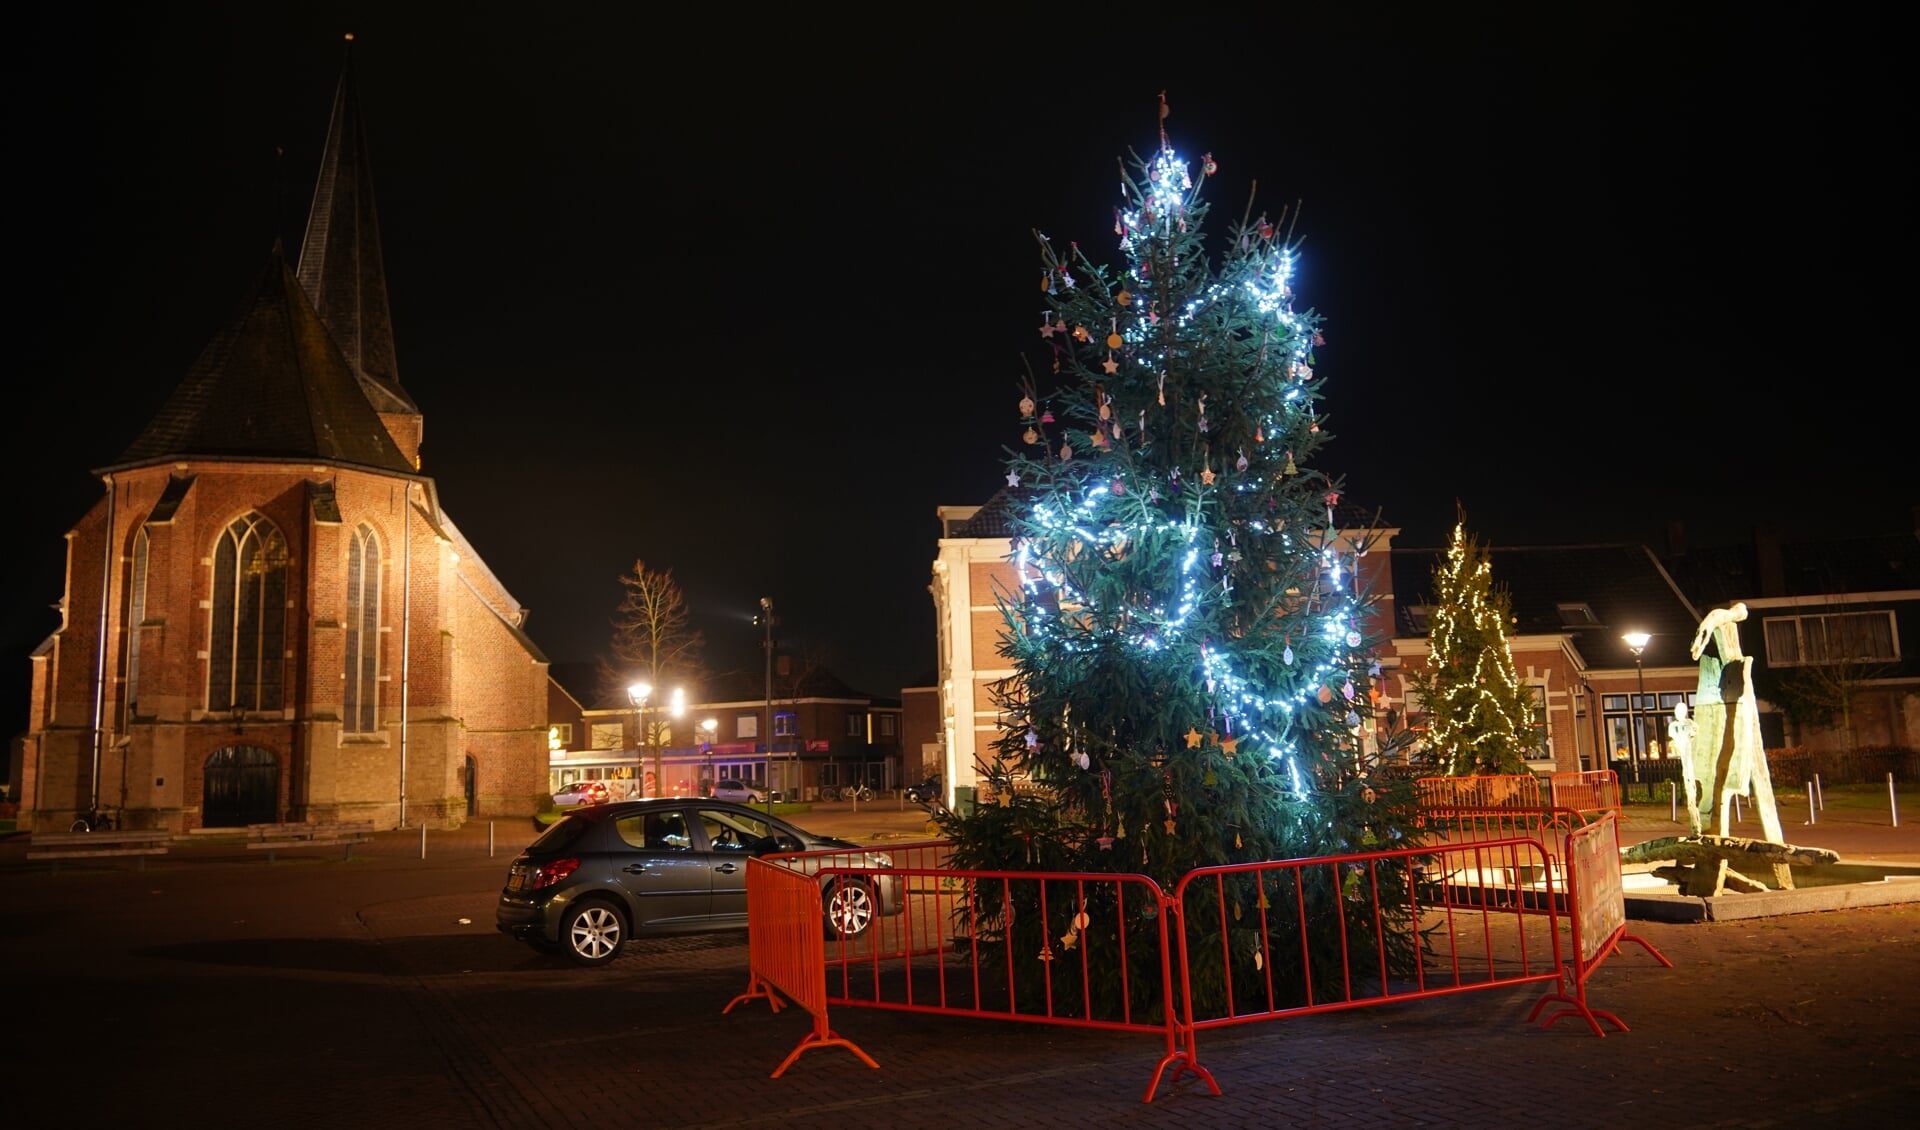 Kerstboom op Prins Clausplein. Foto: Frank Vinkenvleugel